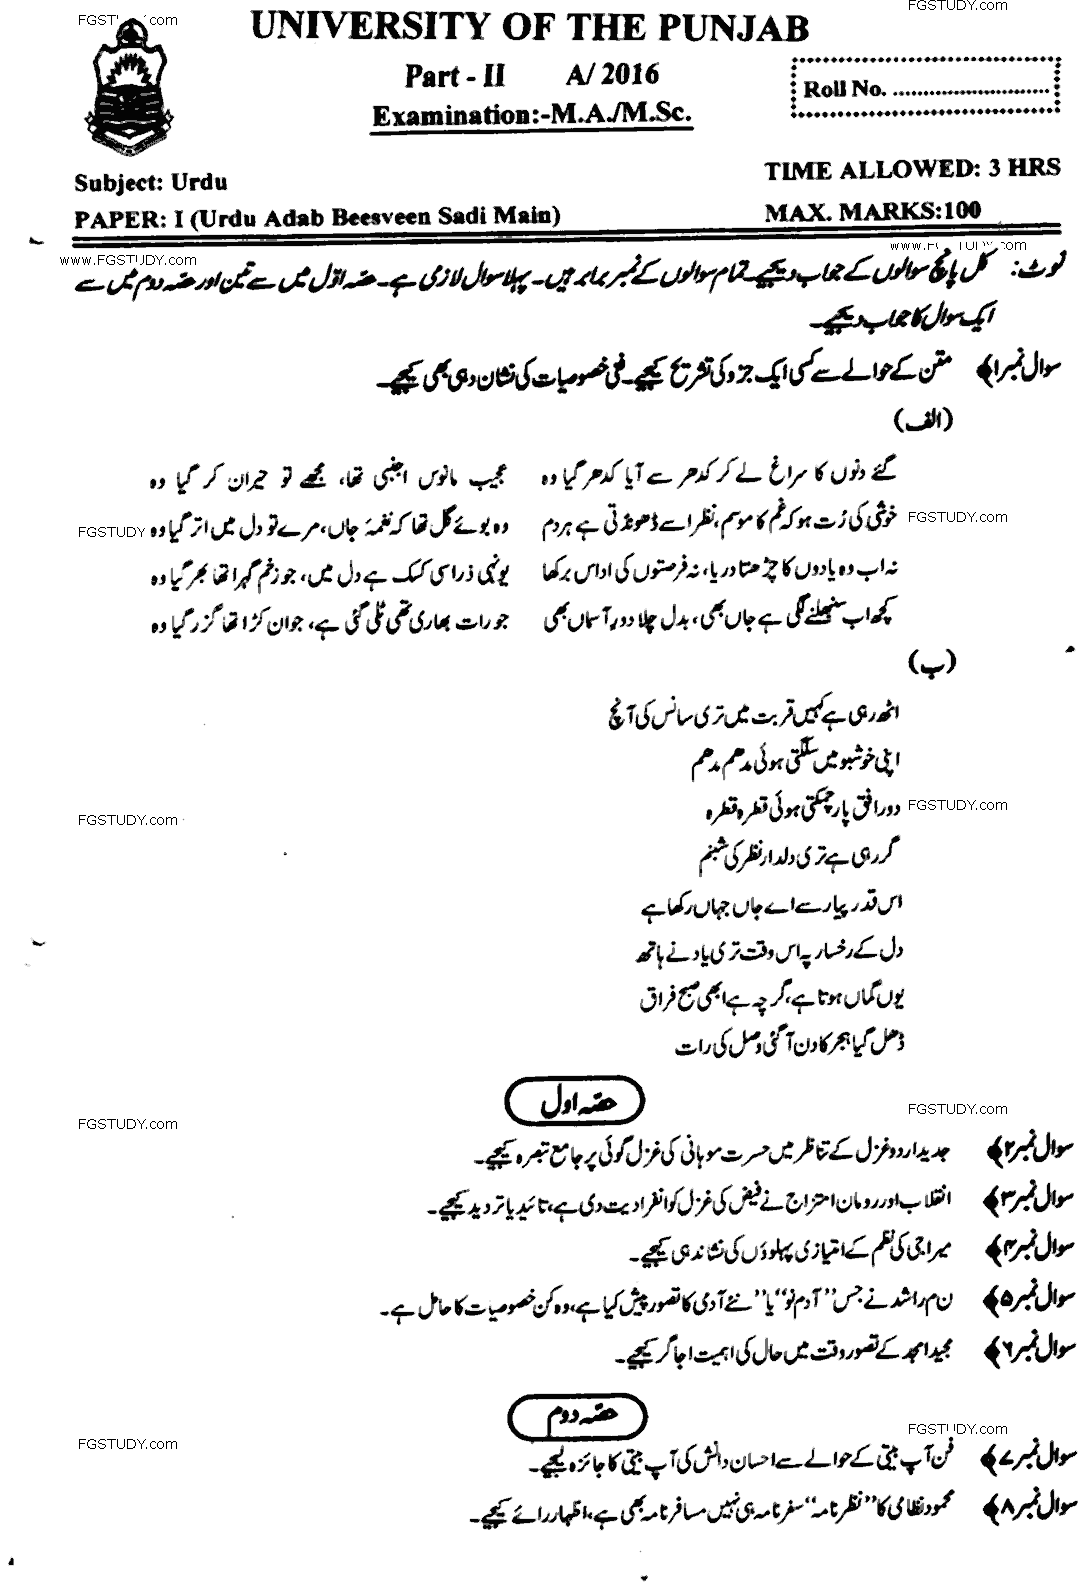 MA Part 2 Urdu Urdu Adab Beesveen Sadi Main Past Paper 2016 Punjab University